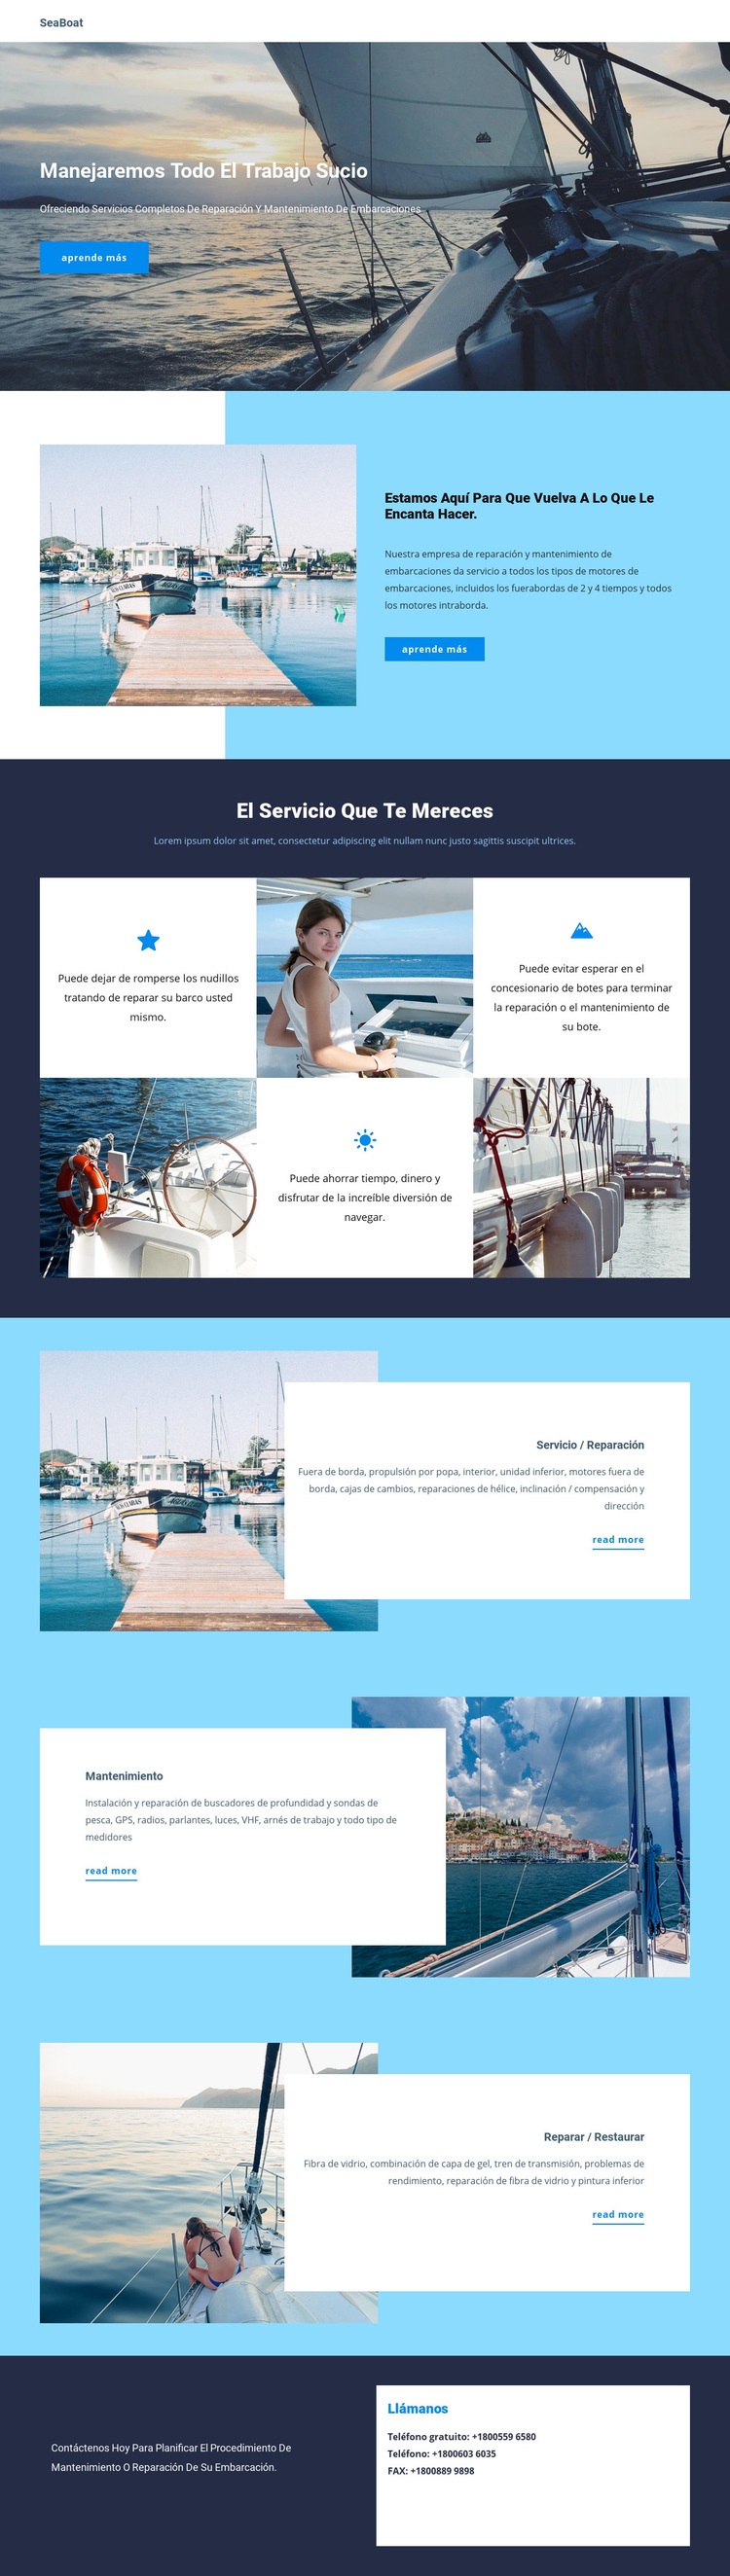 Viajar en Seaboat Diseño de páginas web